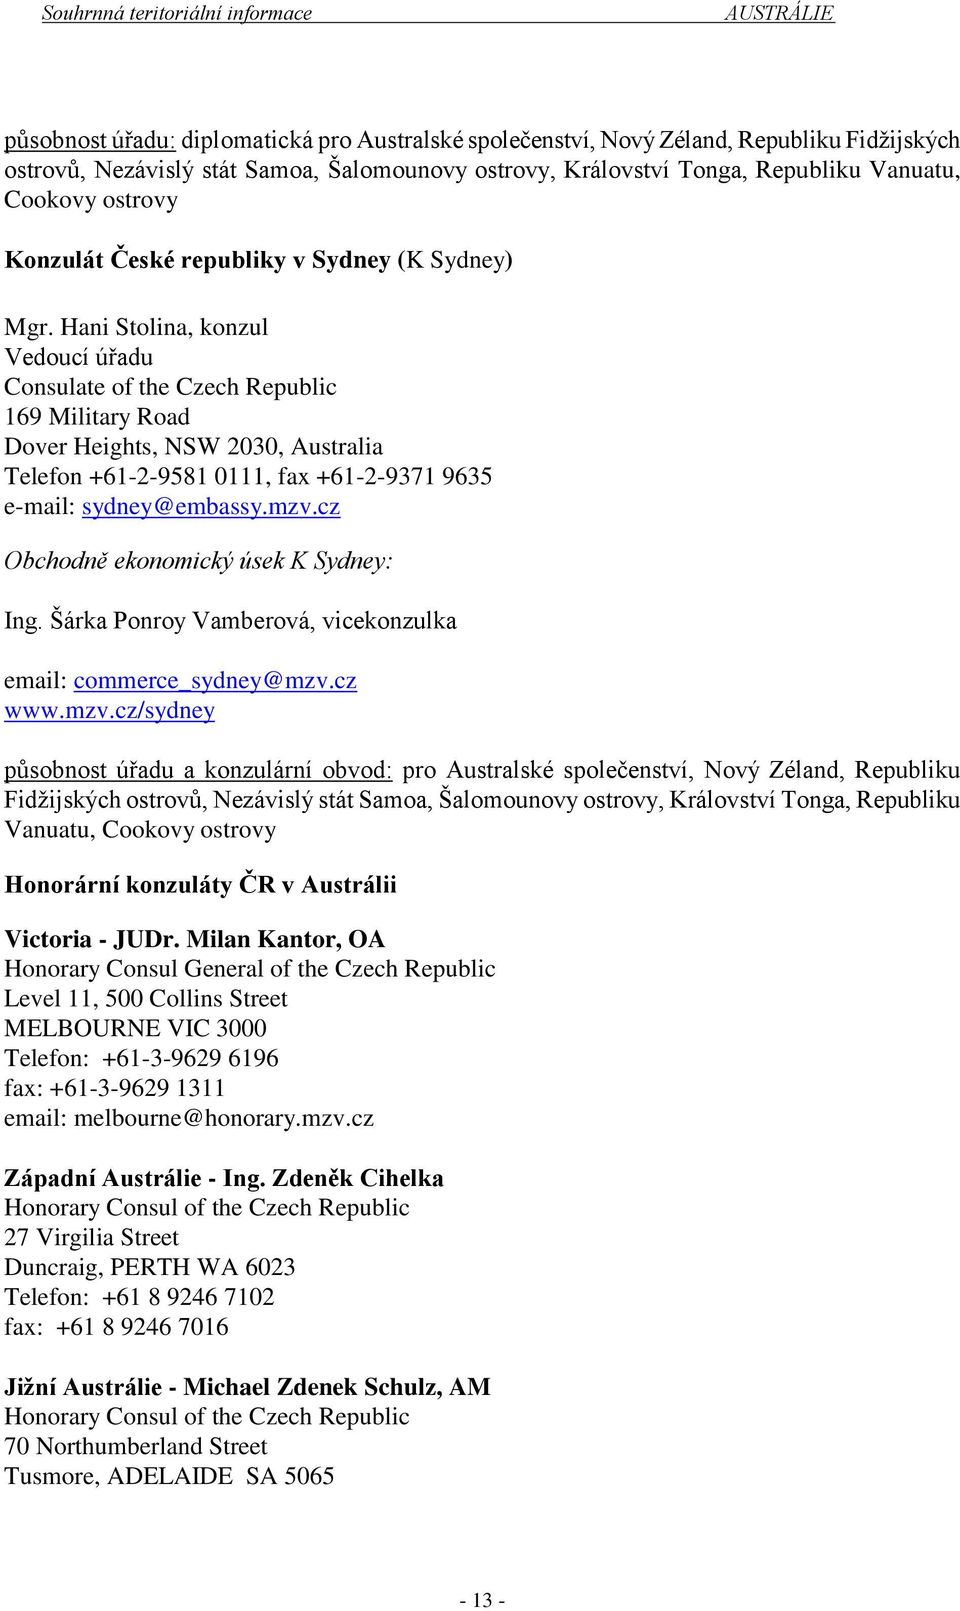 Hani Stolina, konzul Vedoucí úřadu Consulate of the Czech Republic 169 Military Road Dover Heights, NSW 2030, Australia Telefon +61-2-9581 0111, fax +61-2-9371 9635 e-mail: sydney@embassy.mzv.